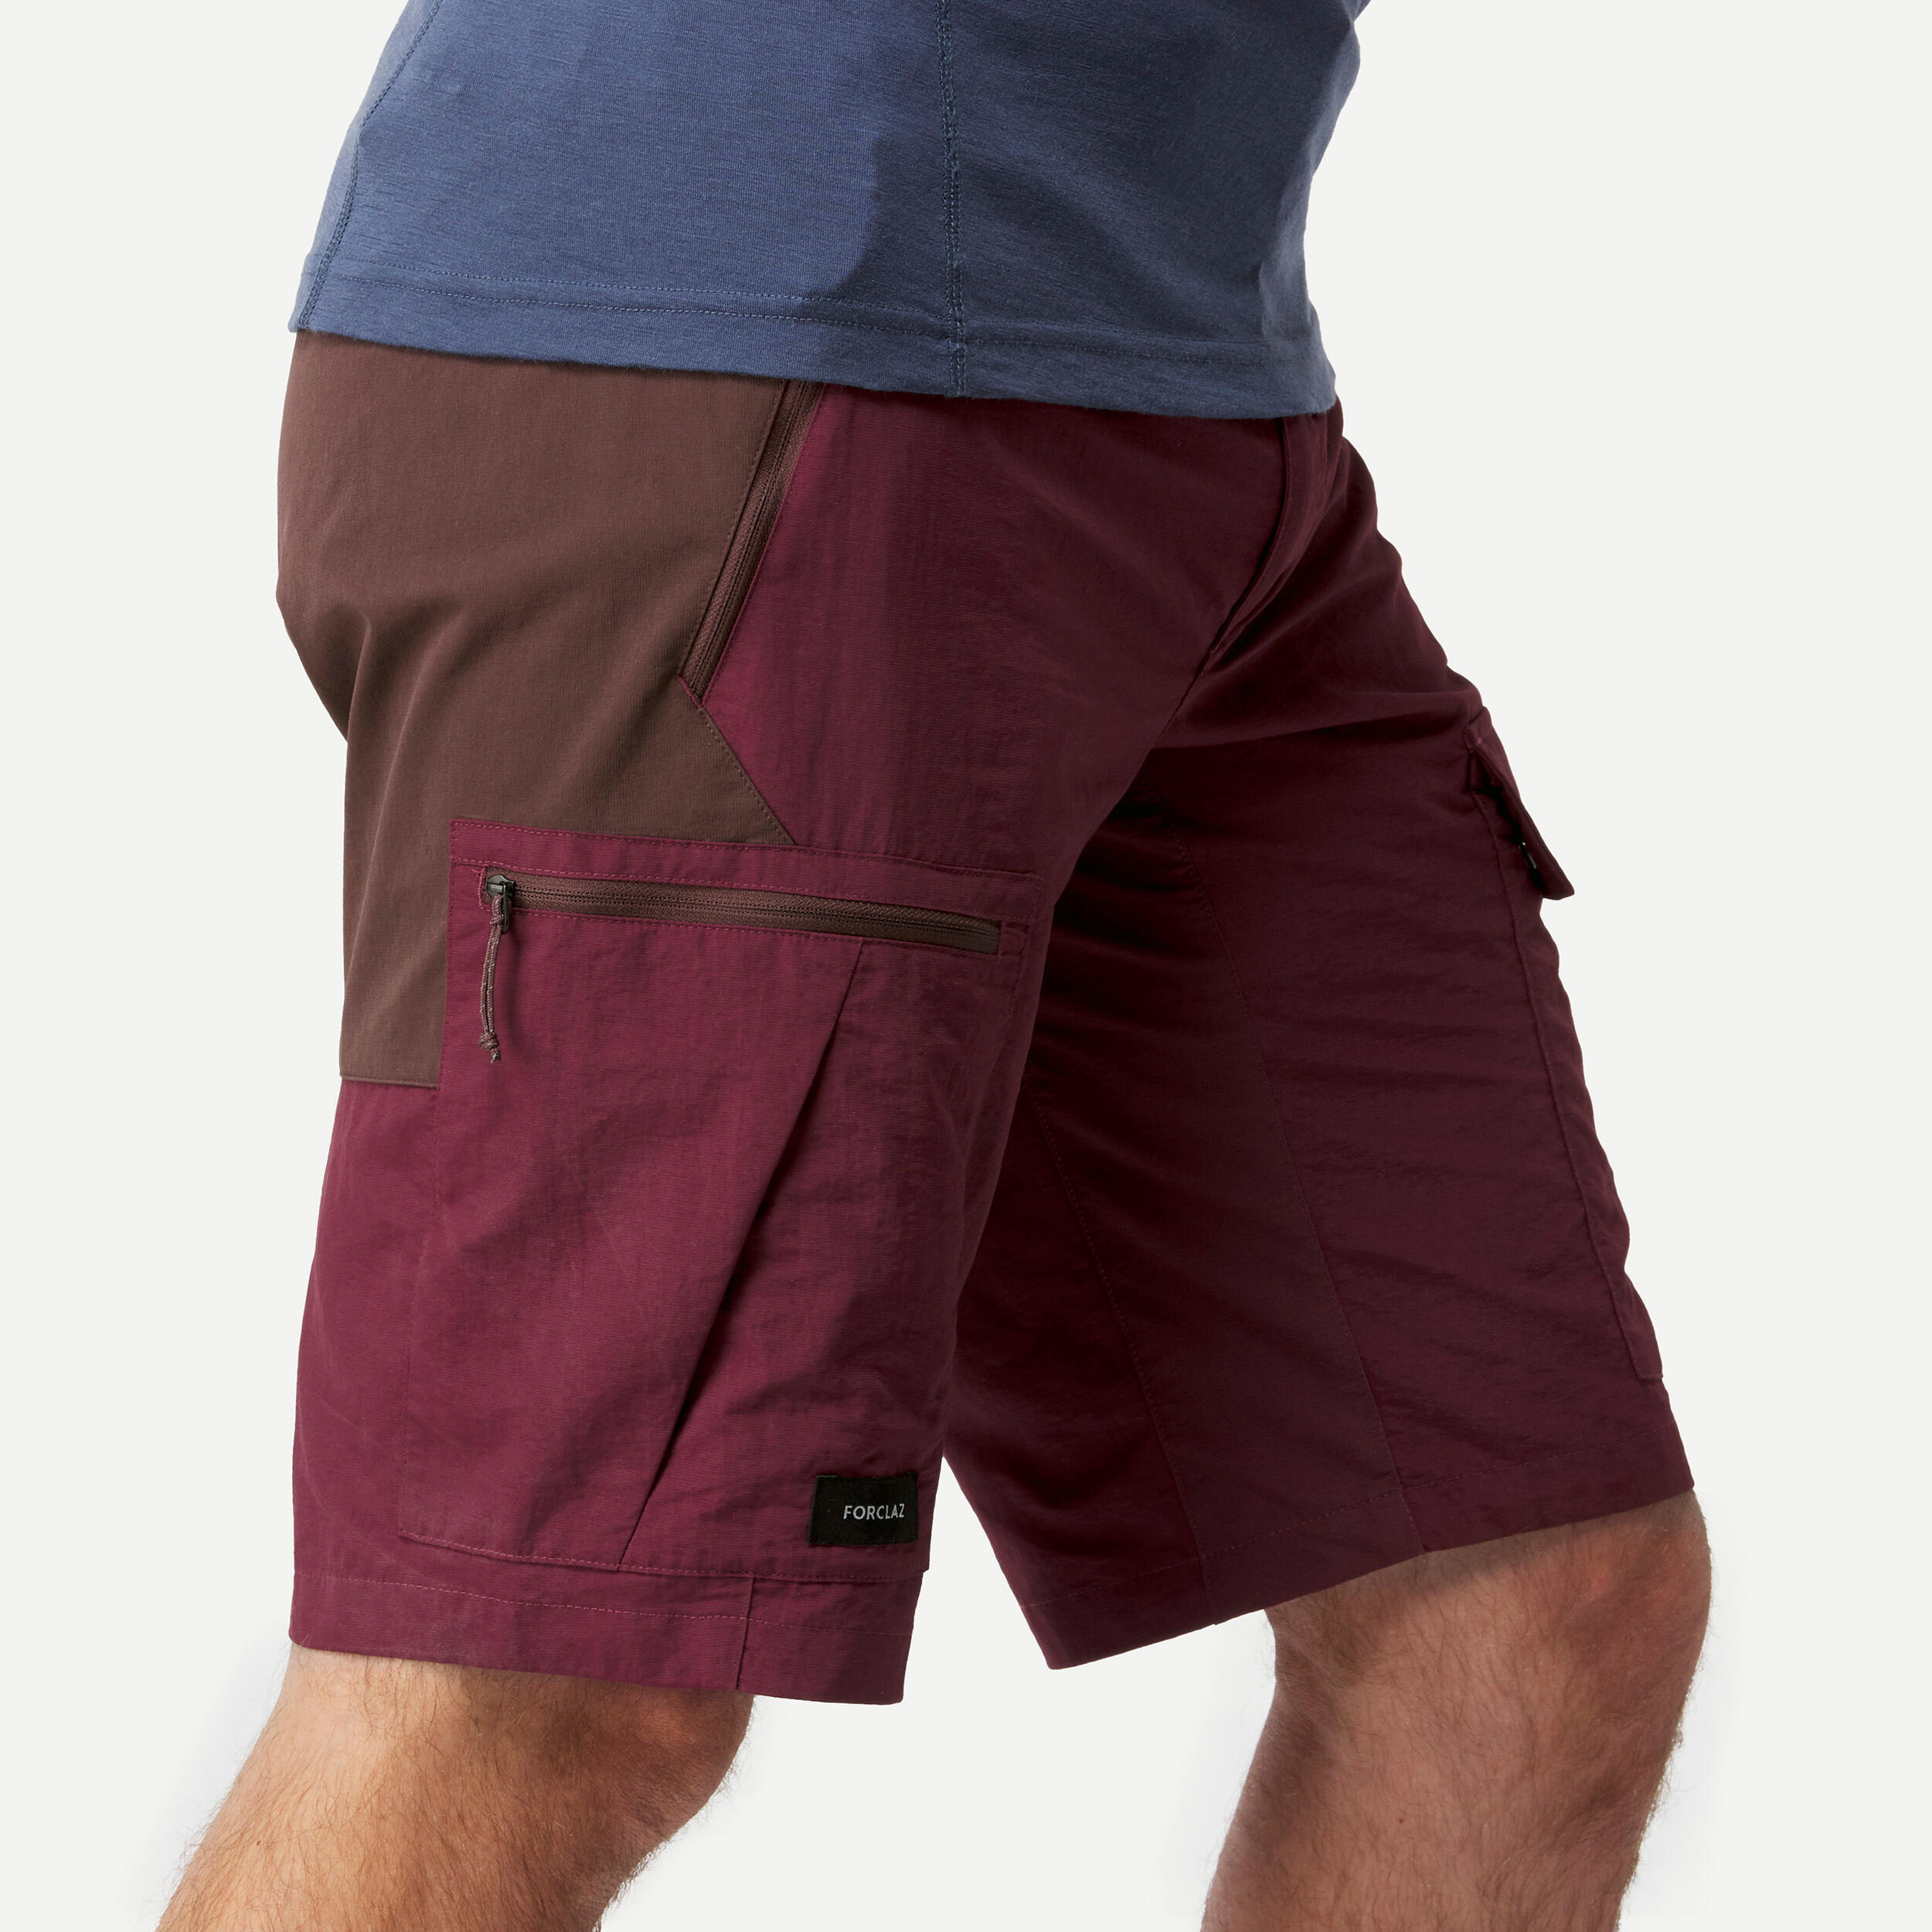 Men's Trekking Shorts - MT500 4/7